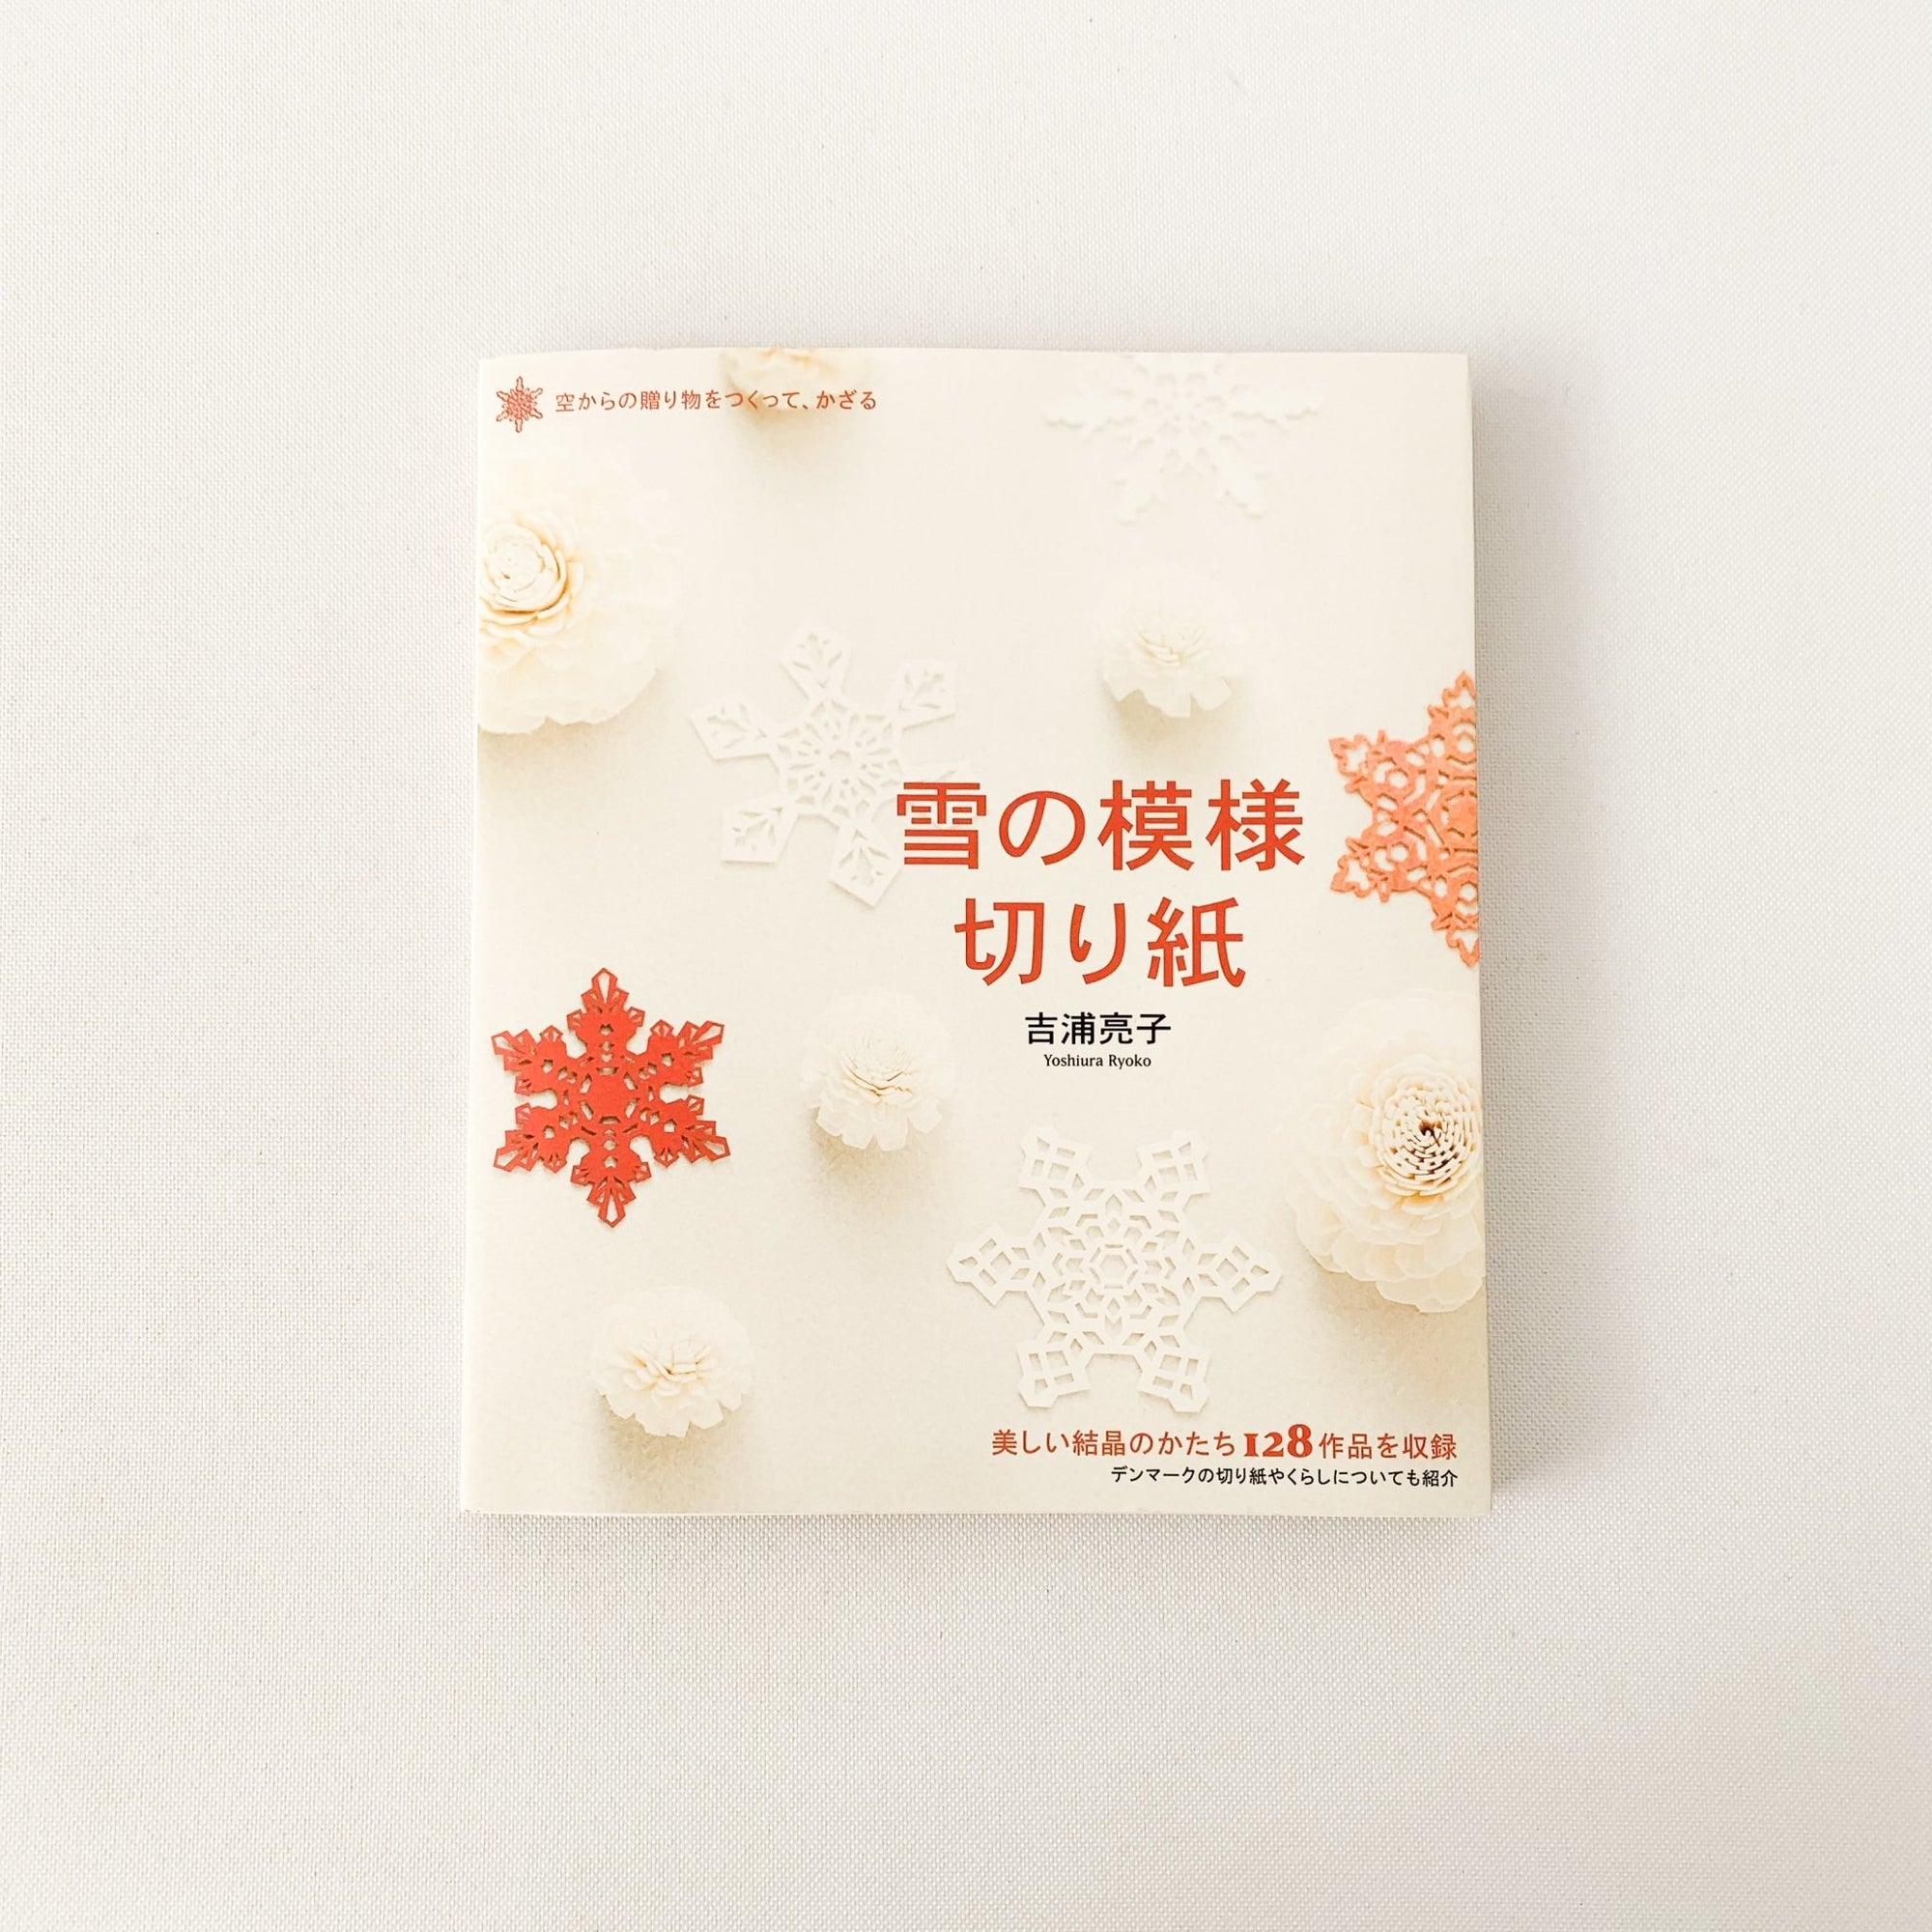 Paper Snow Art by Yoshiura Ryoko - tortoise general store